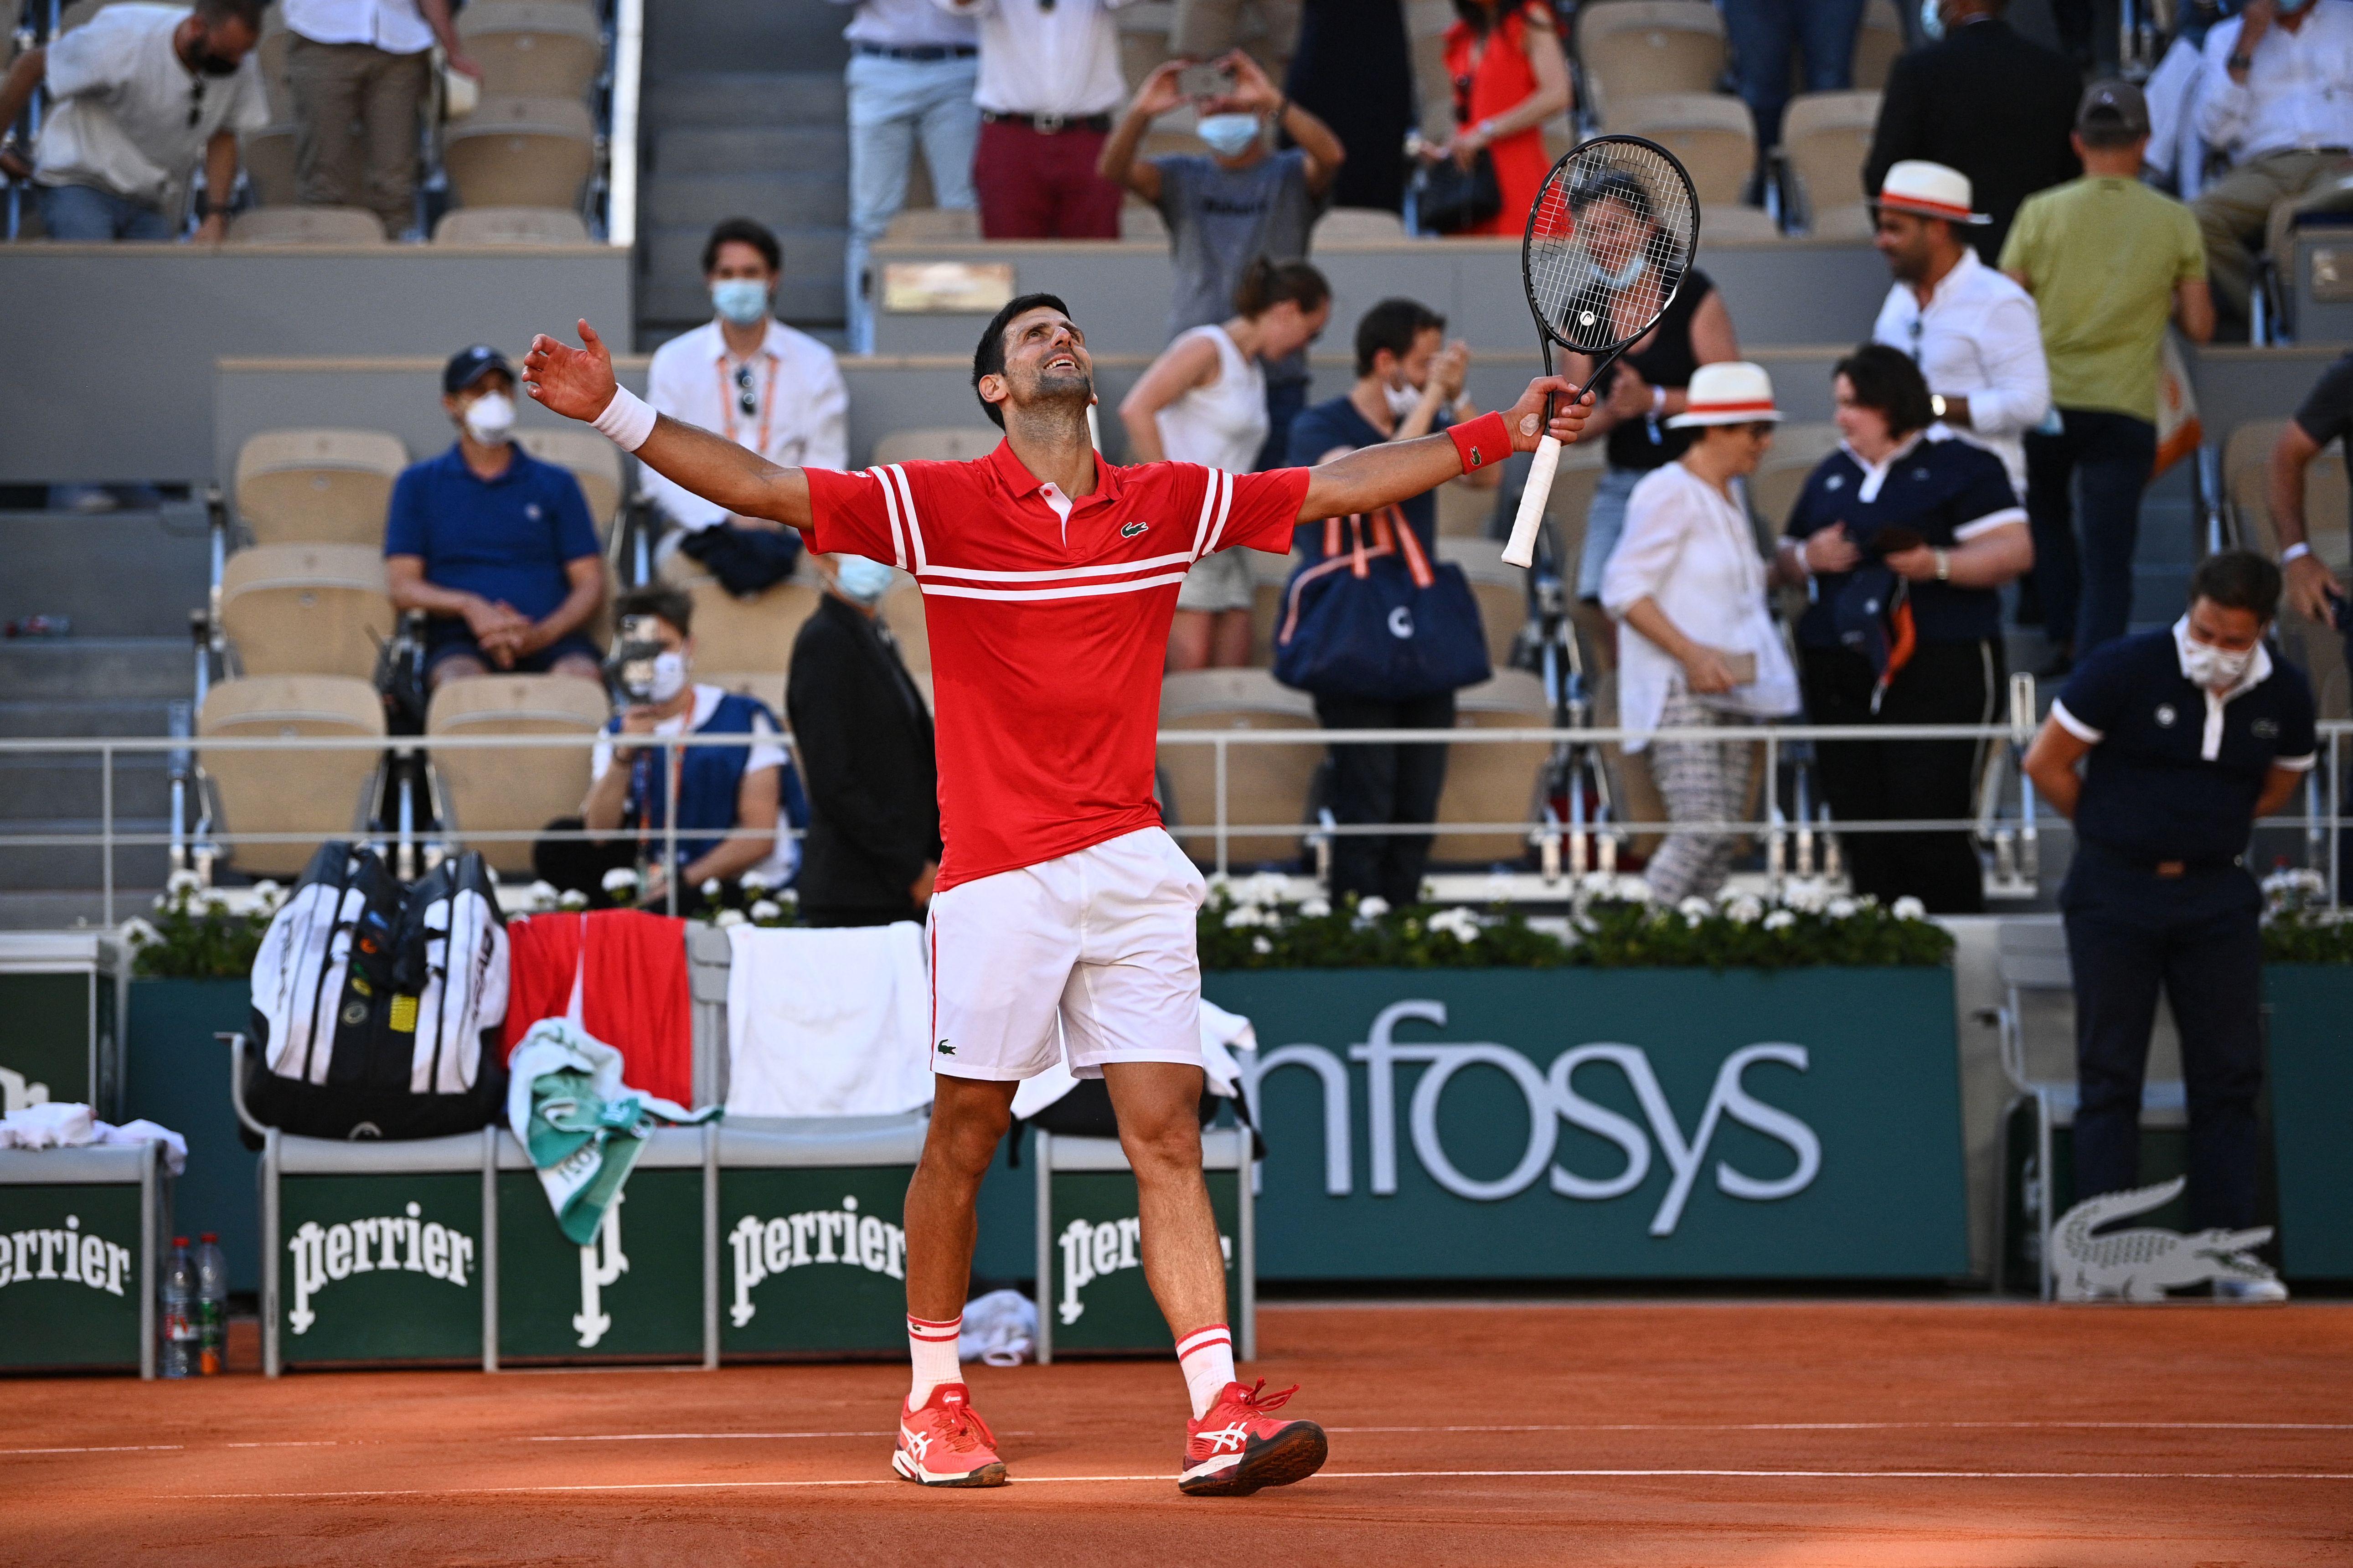 Seiko Ambassador, Novak Djokovic, Wins Roland Garros Tennis Tournament